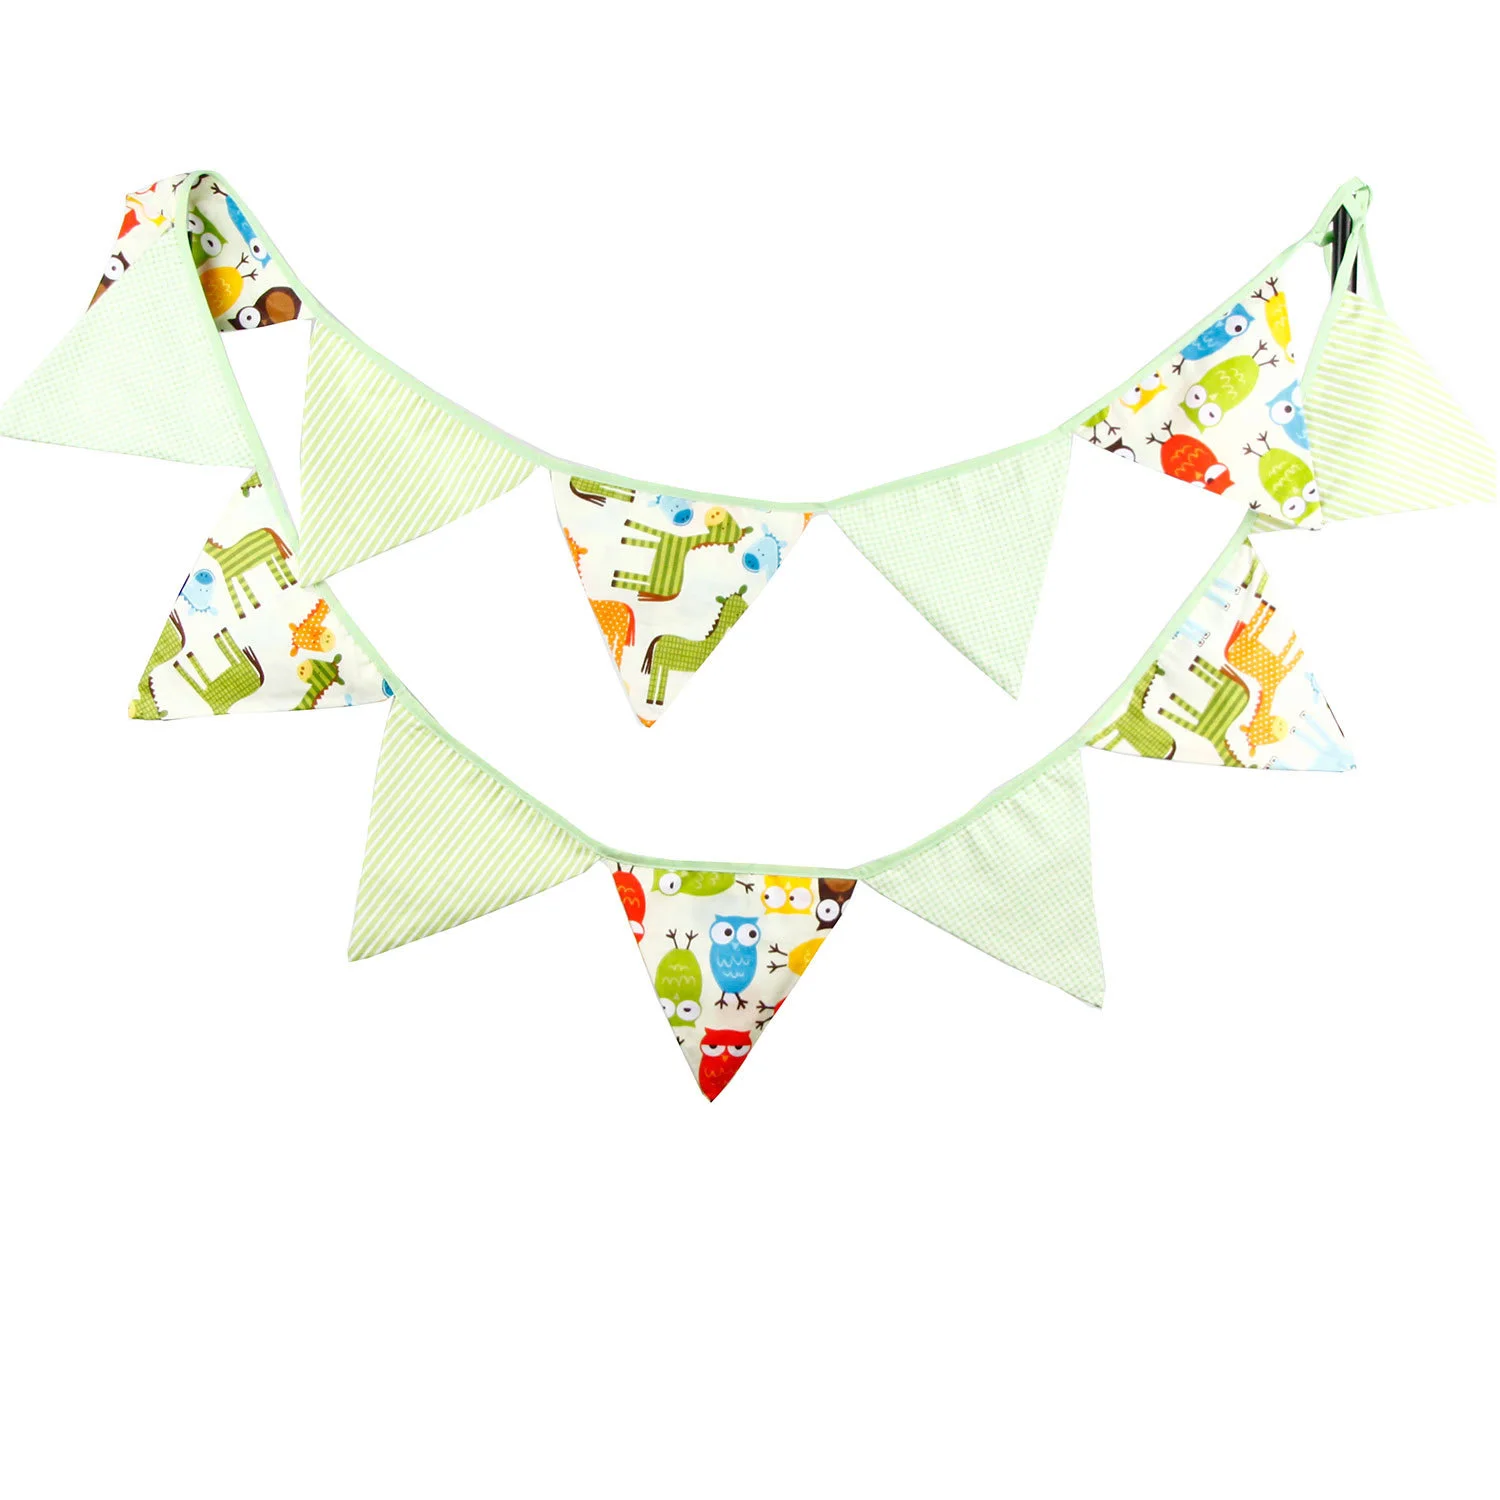 Хлопковая ткань баннеры Свадебные флаги украшения Baby Shower на день рождения хлопчатобумажная тканевая гирлянда скандинавские украшения для детской комнаты